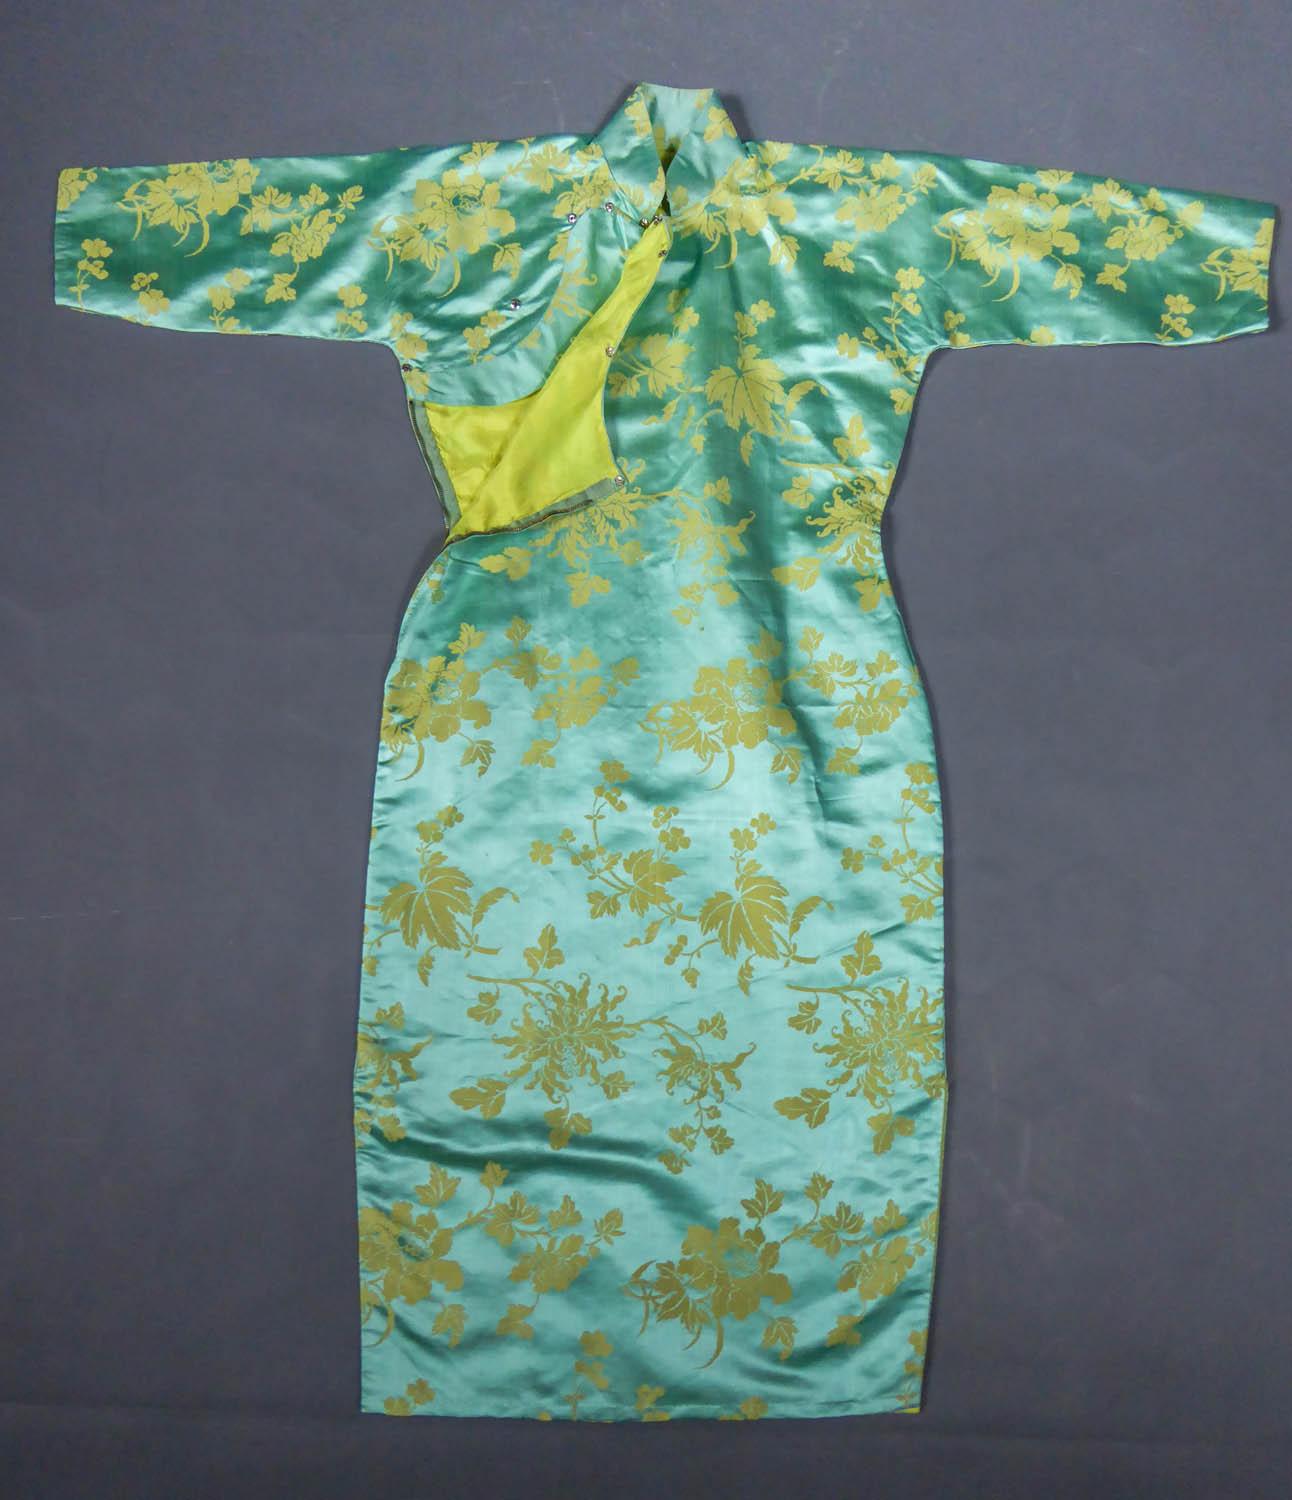 Ca. 1950/1960
Frankreich

Hauteng anliegendes chinesisches Kleid, Qipao oder Cheongsam genannt, aus himmelblauem und strohgelbem Seidendamast aus den Jahren 1950/1960. Himmelblauer Damast-Satin-Hintergrund mit großen stilisierten Blumen,